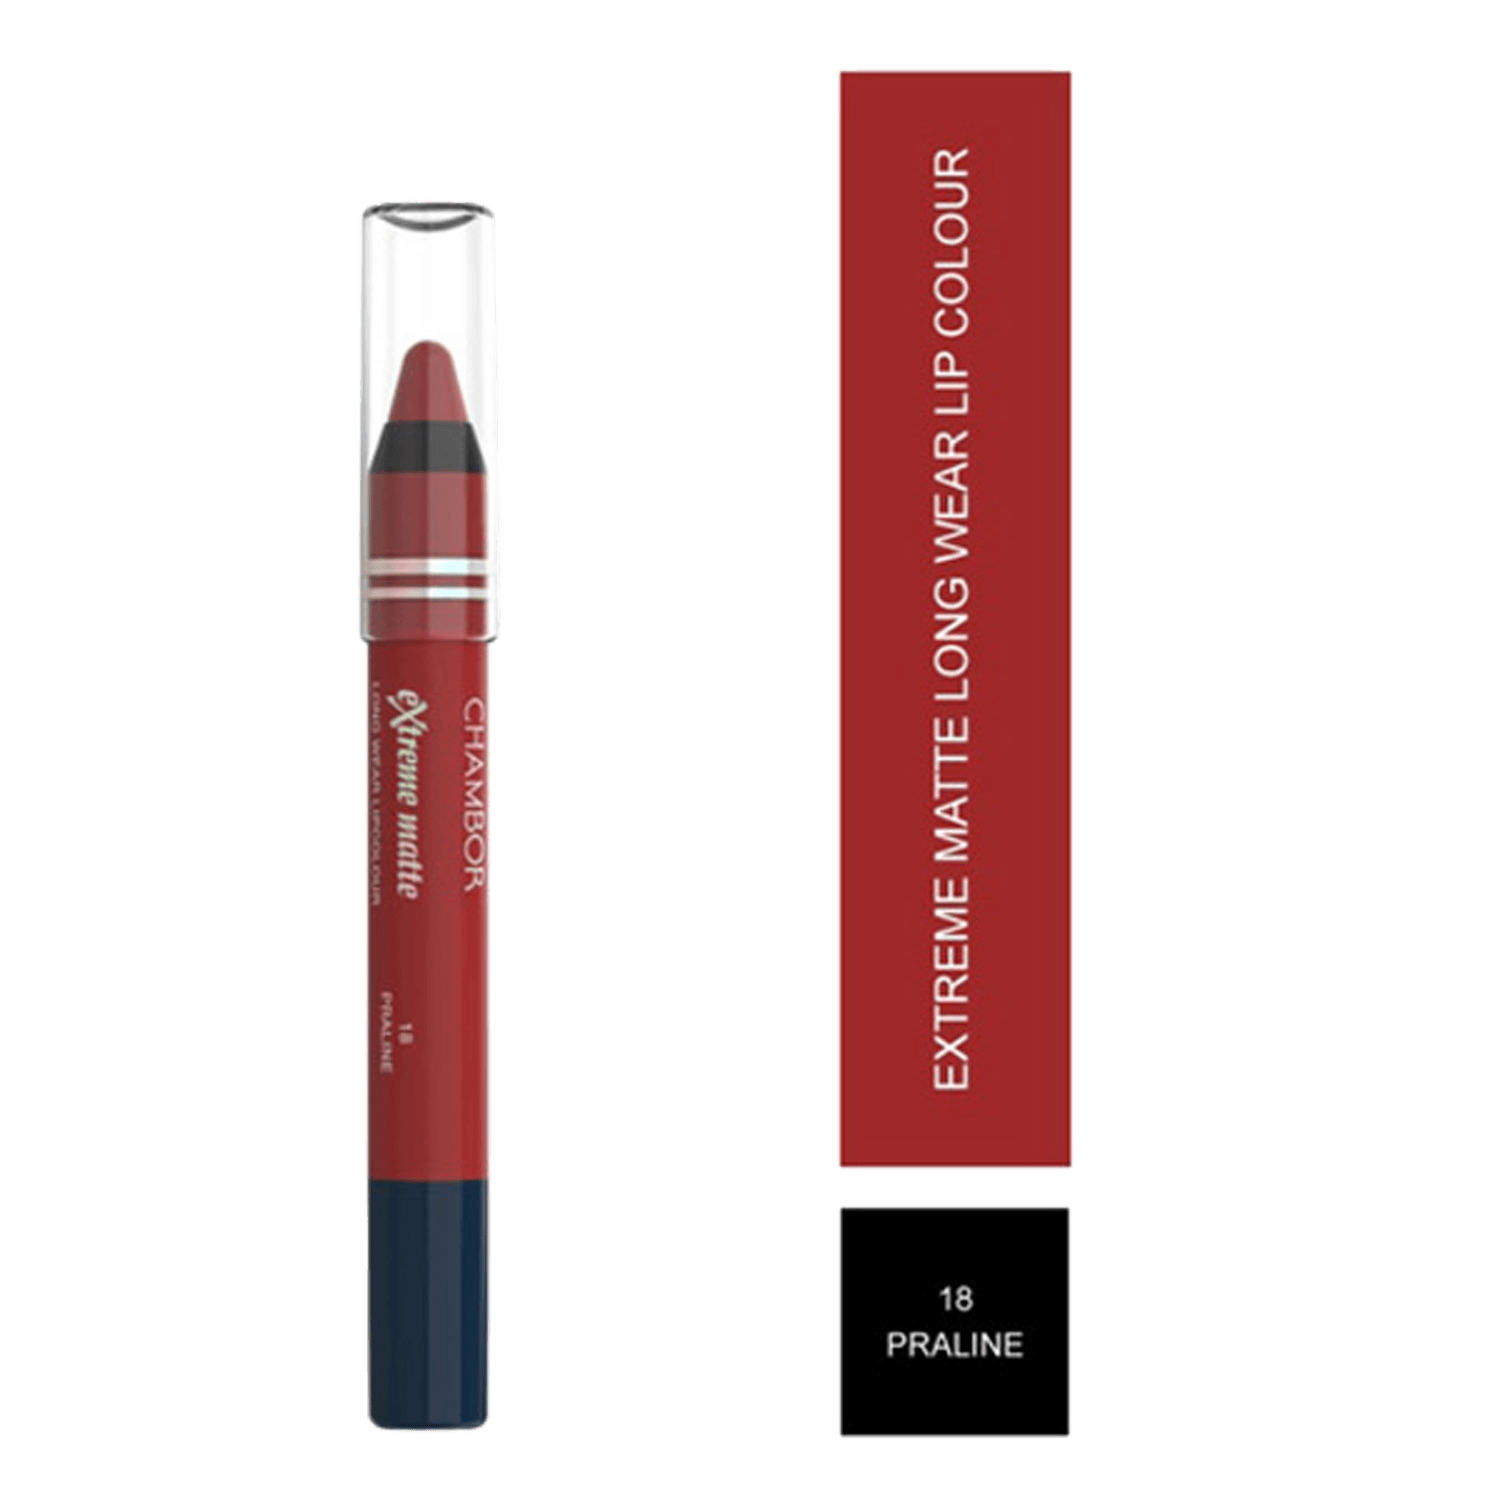 Chambor | Chambor Extreme Matte Long Wear Lip Colour Make up Les Meringues Collection - Praline, 18 (2.8g)